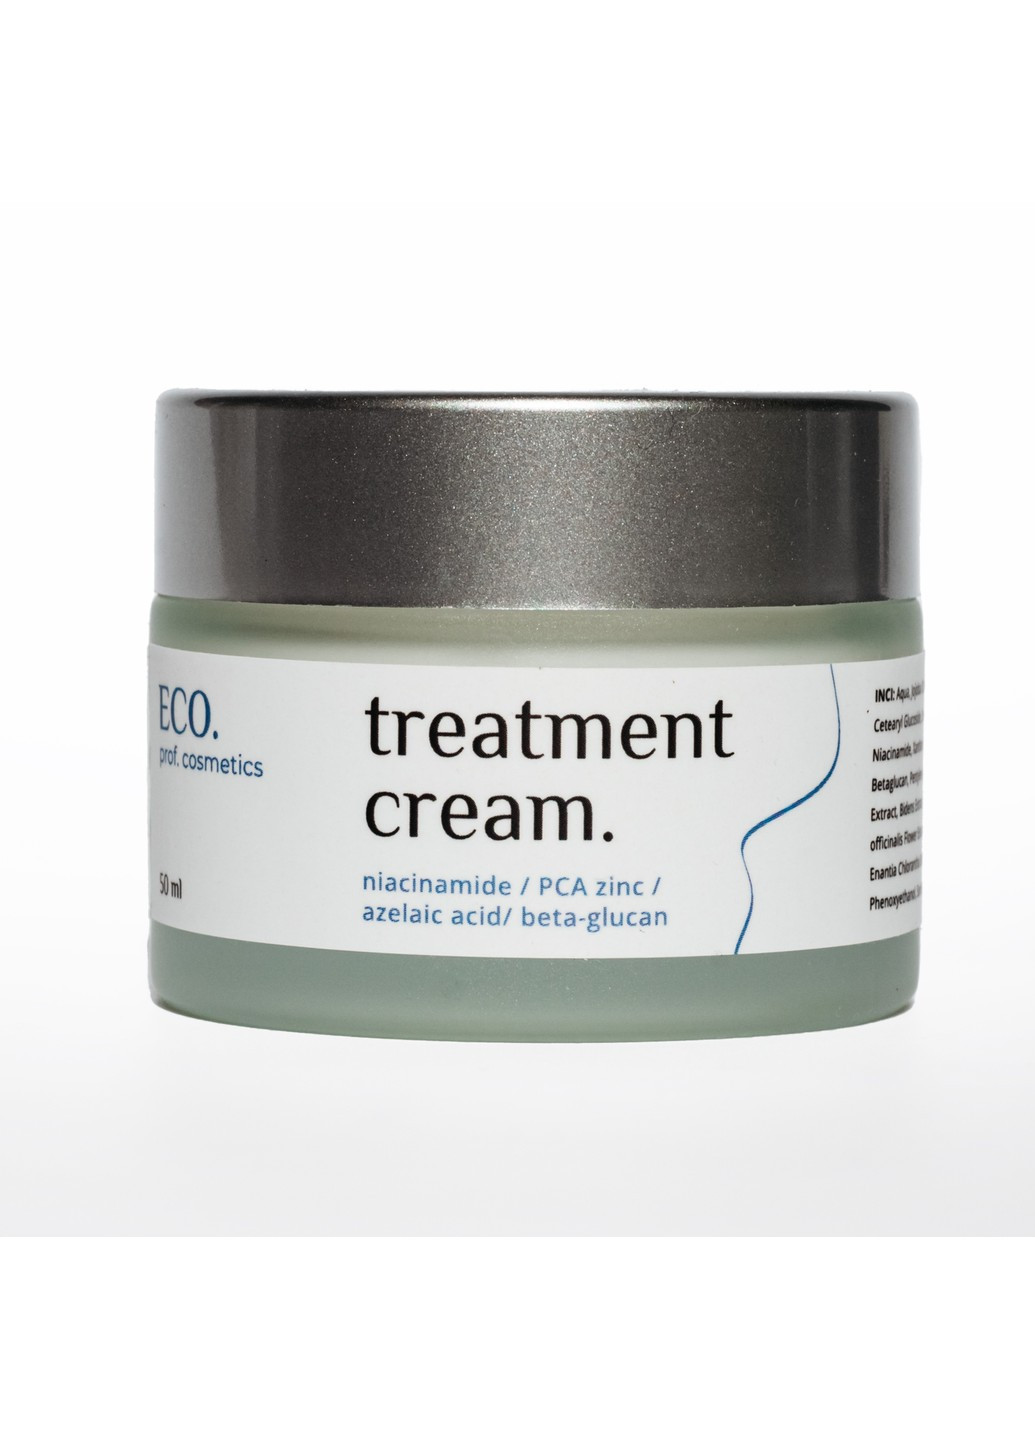 Ламелярный лечебный крем для жирной и комбинированной кожи Treatment cream 50 мл Eco.prof.cosmetics (254177405)